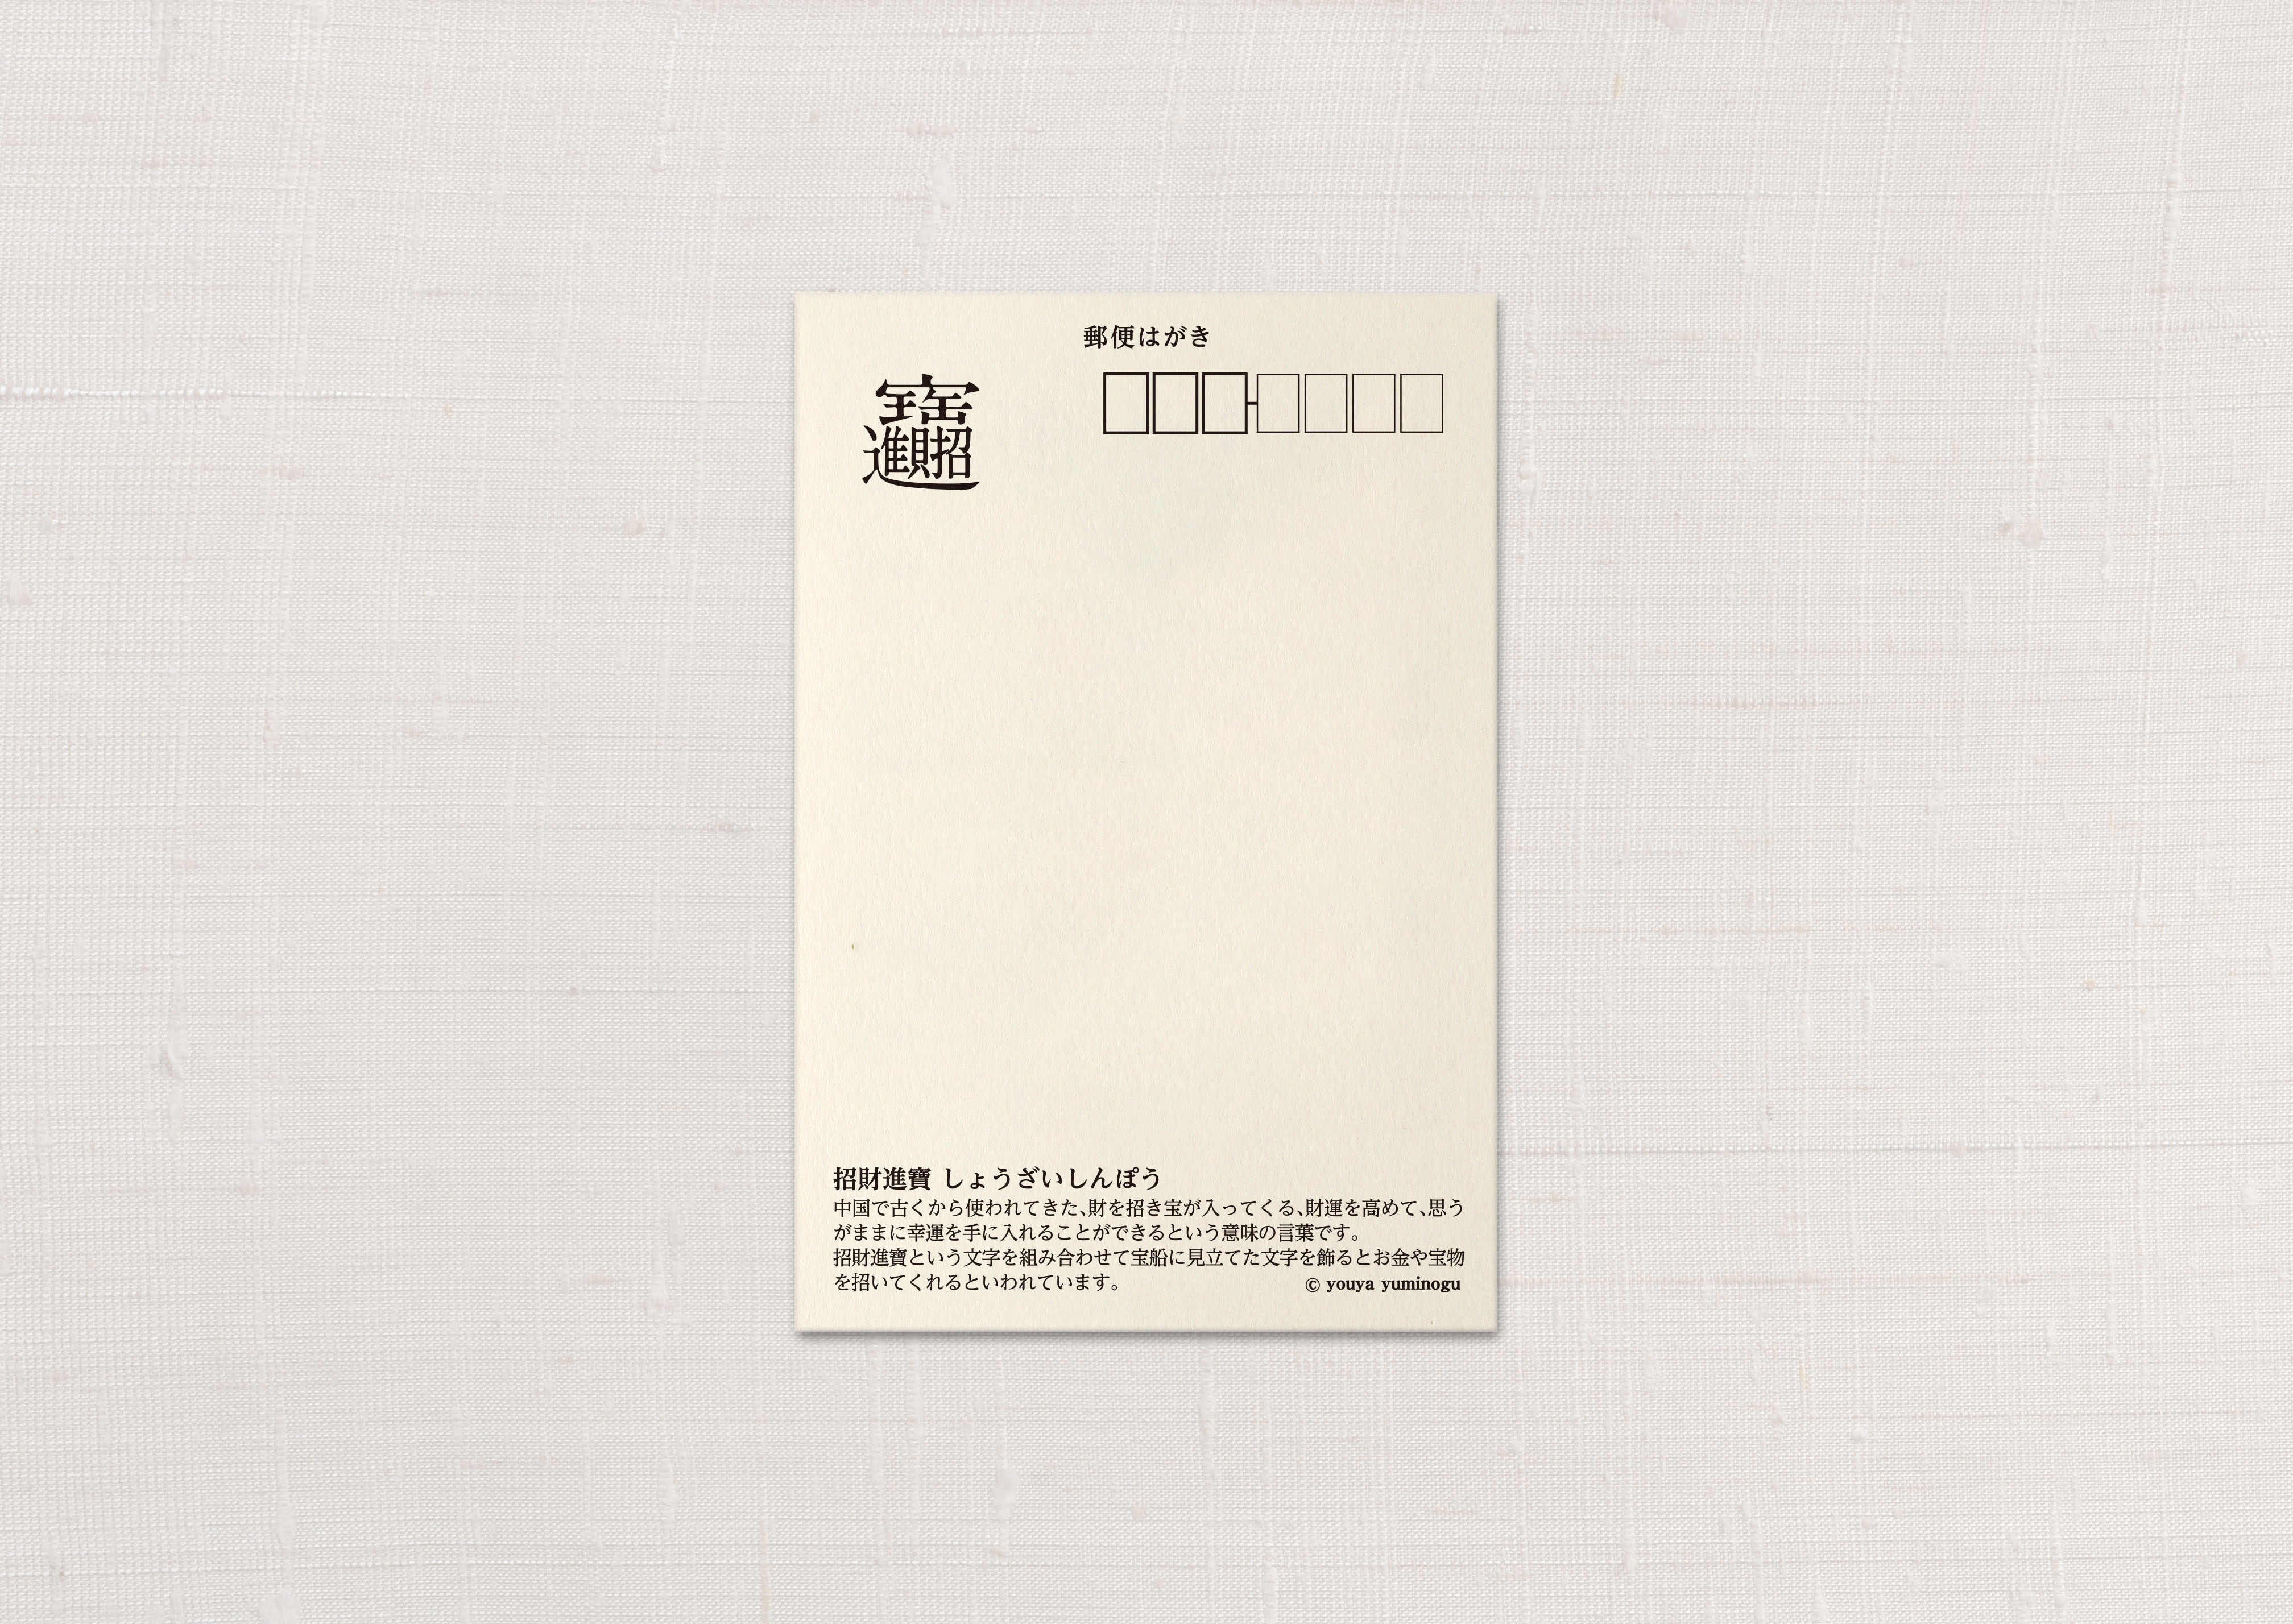 21年 丑 うし 宝袋 年賀状にもなるポストカード 2枚セット 金インク使用 Iichi ハンドメイド クラフト作品 手仕事品の通販